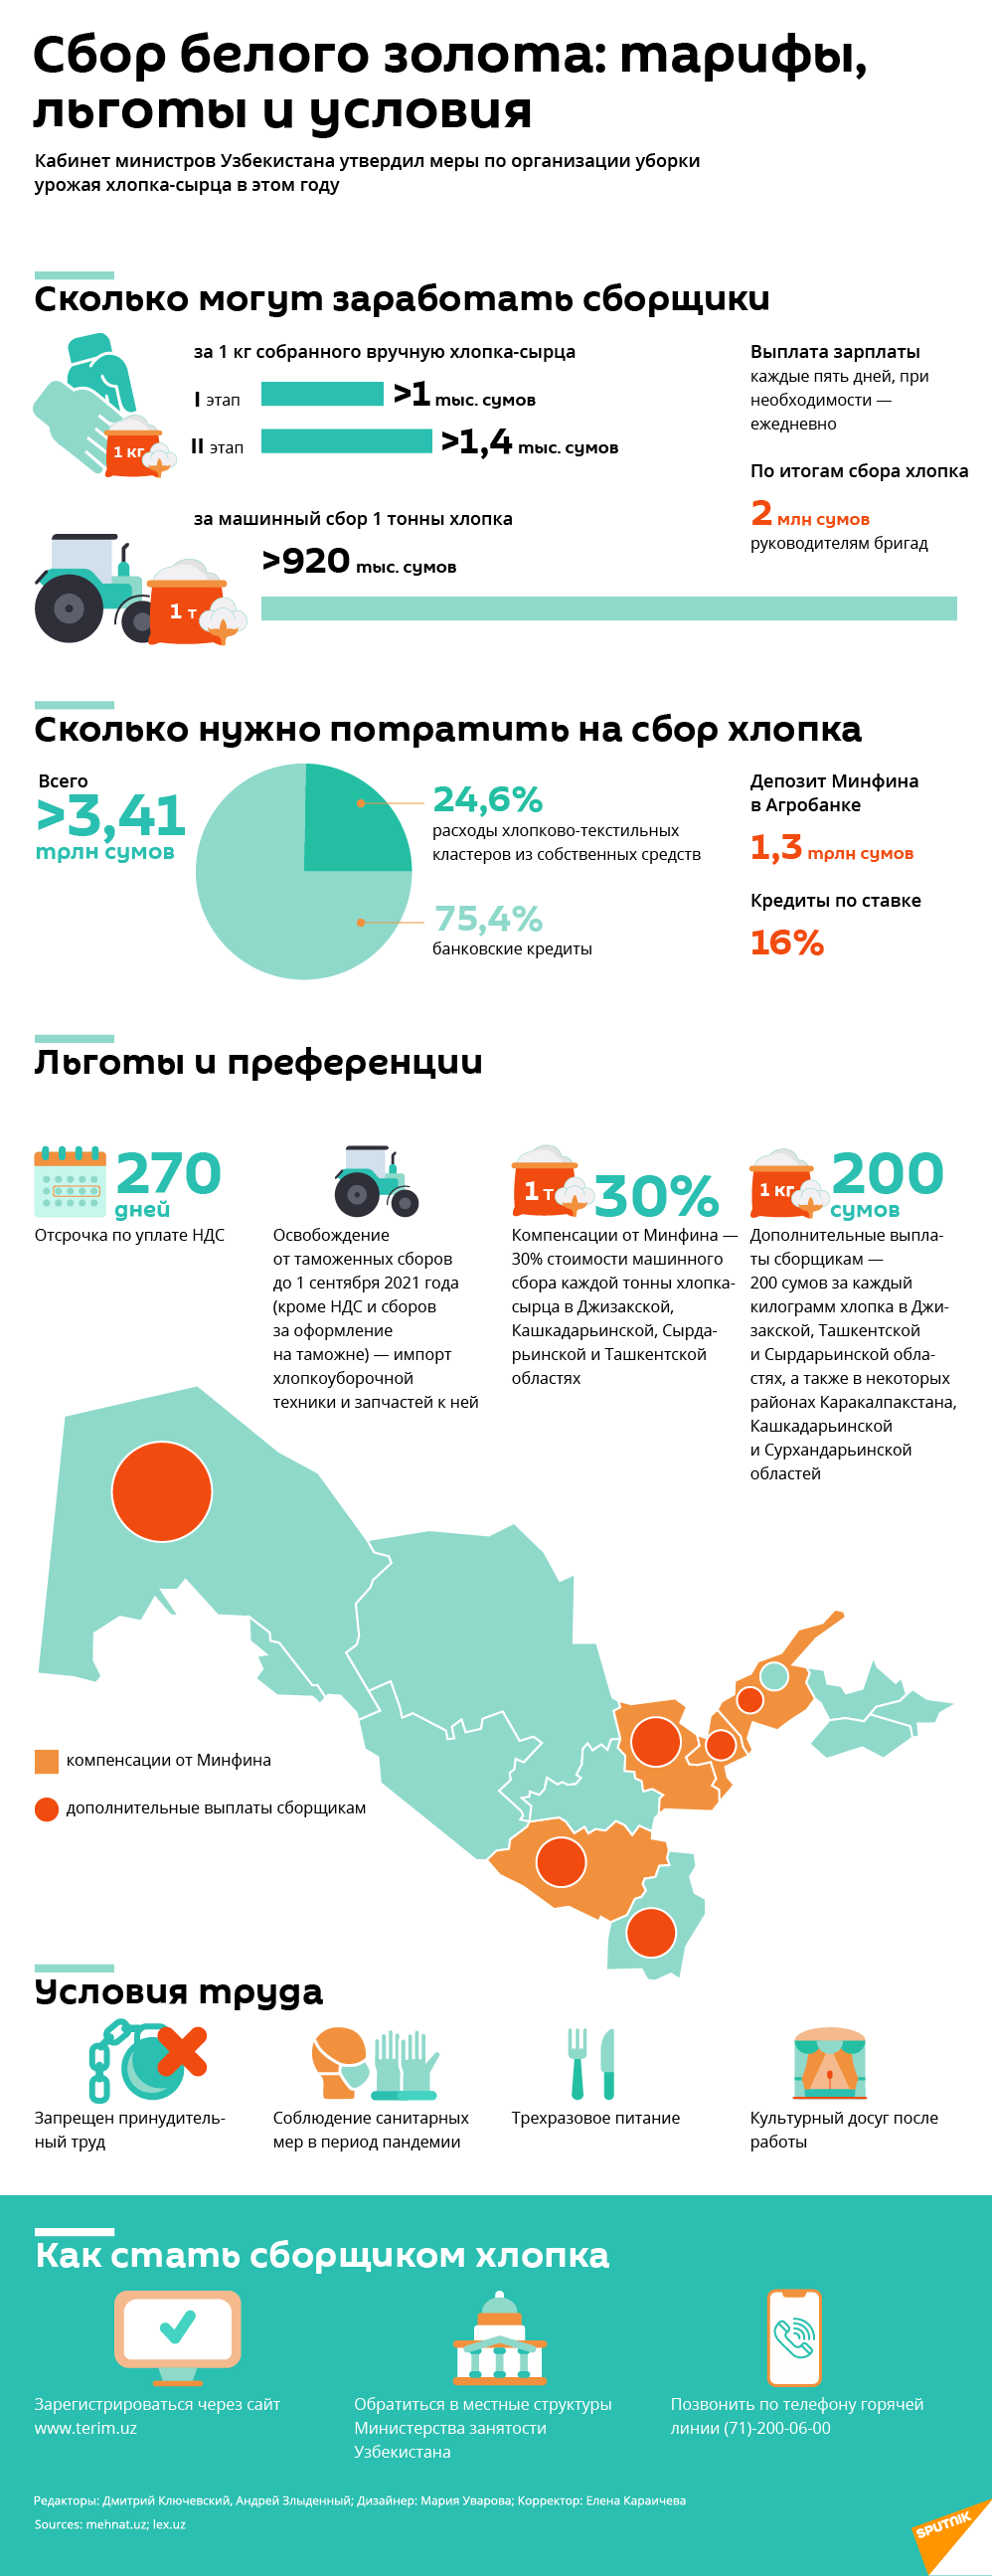 Сбор хлопка в 2020 году - расценки, льготы и условия труда - Sputnik Узбекистан